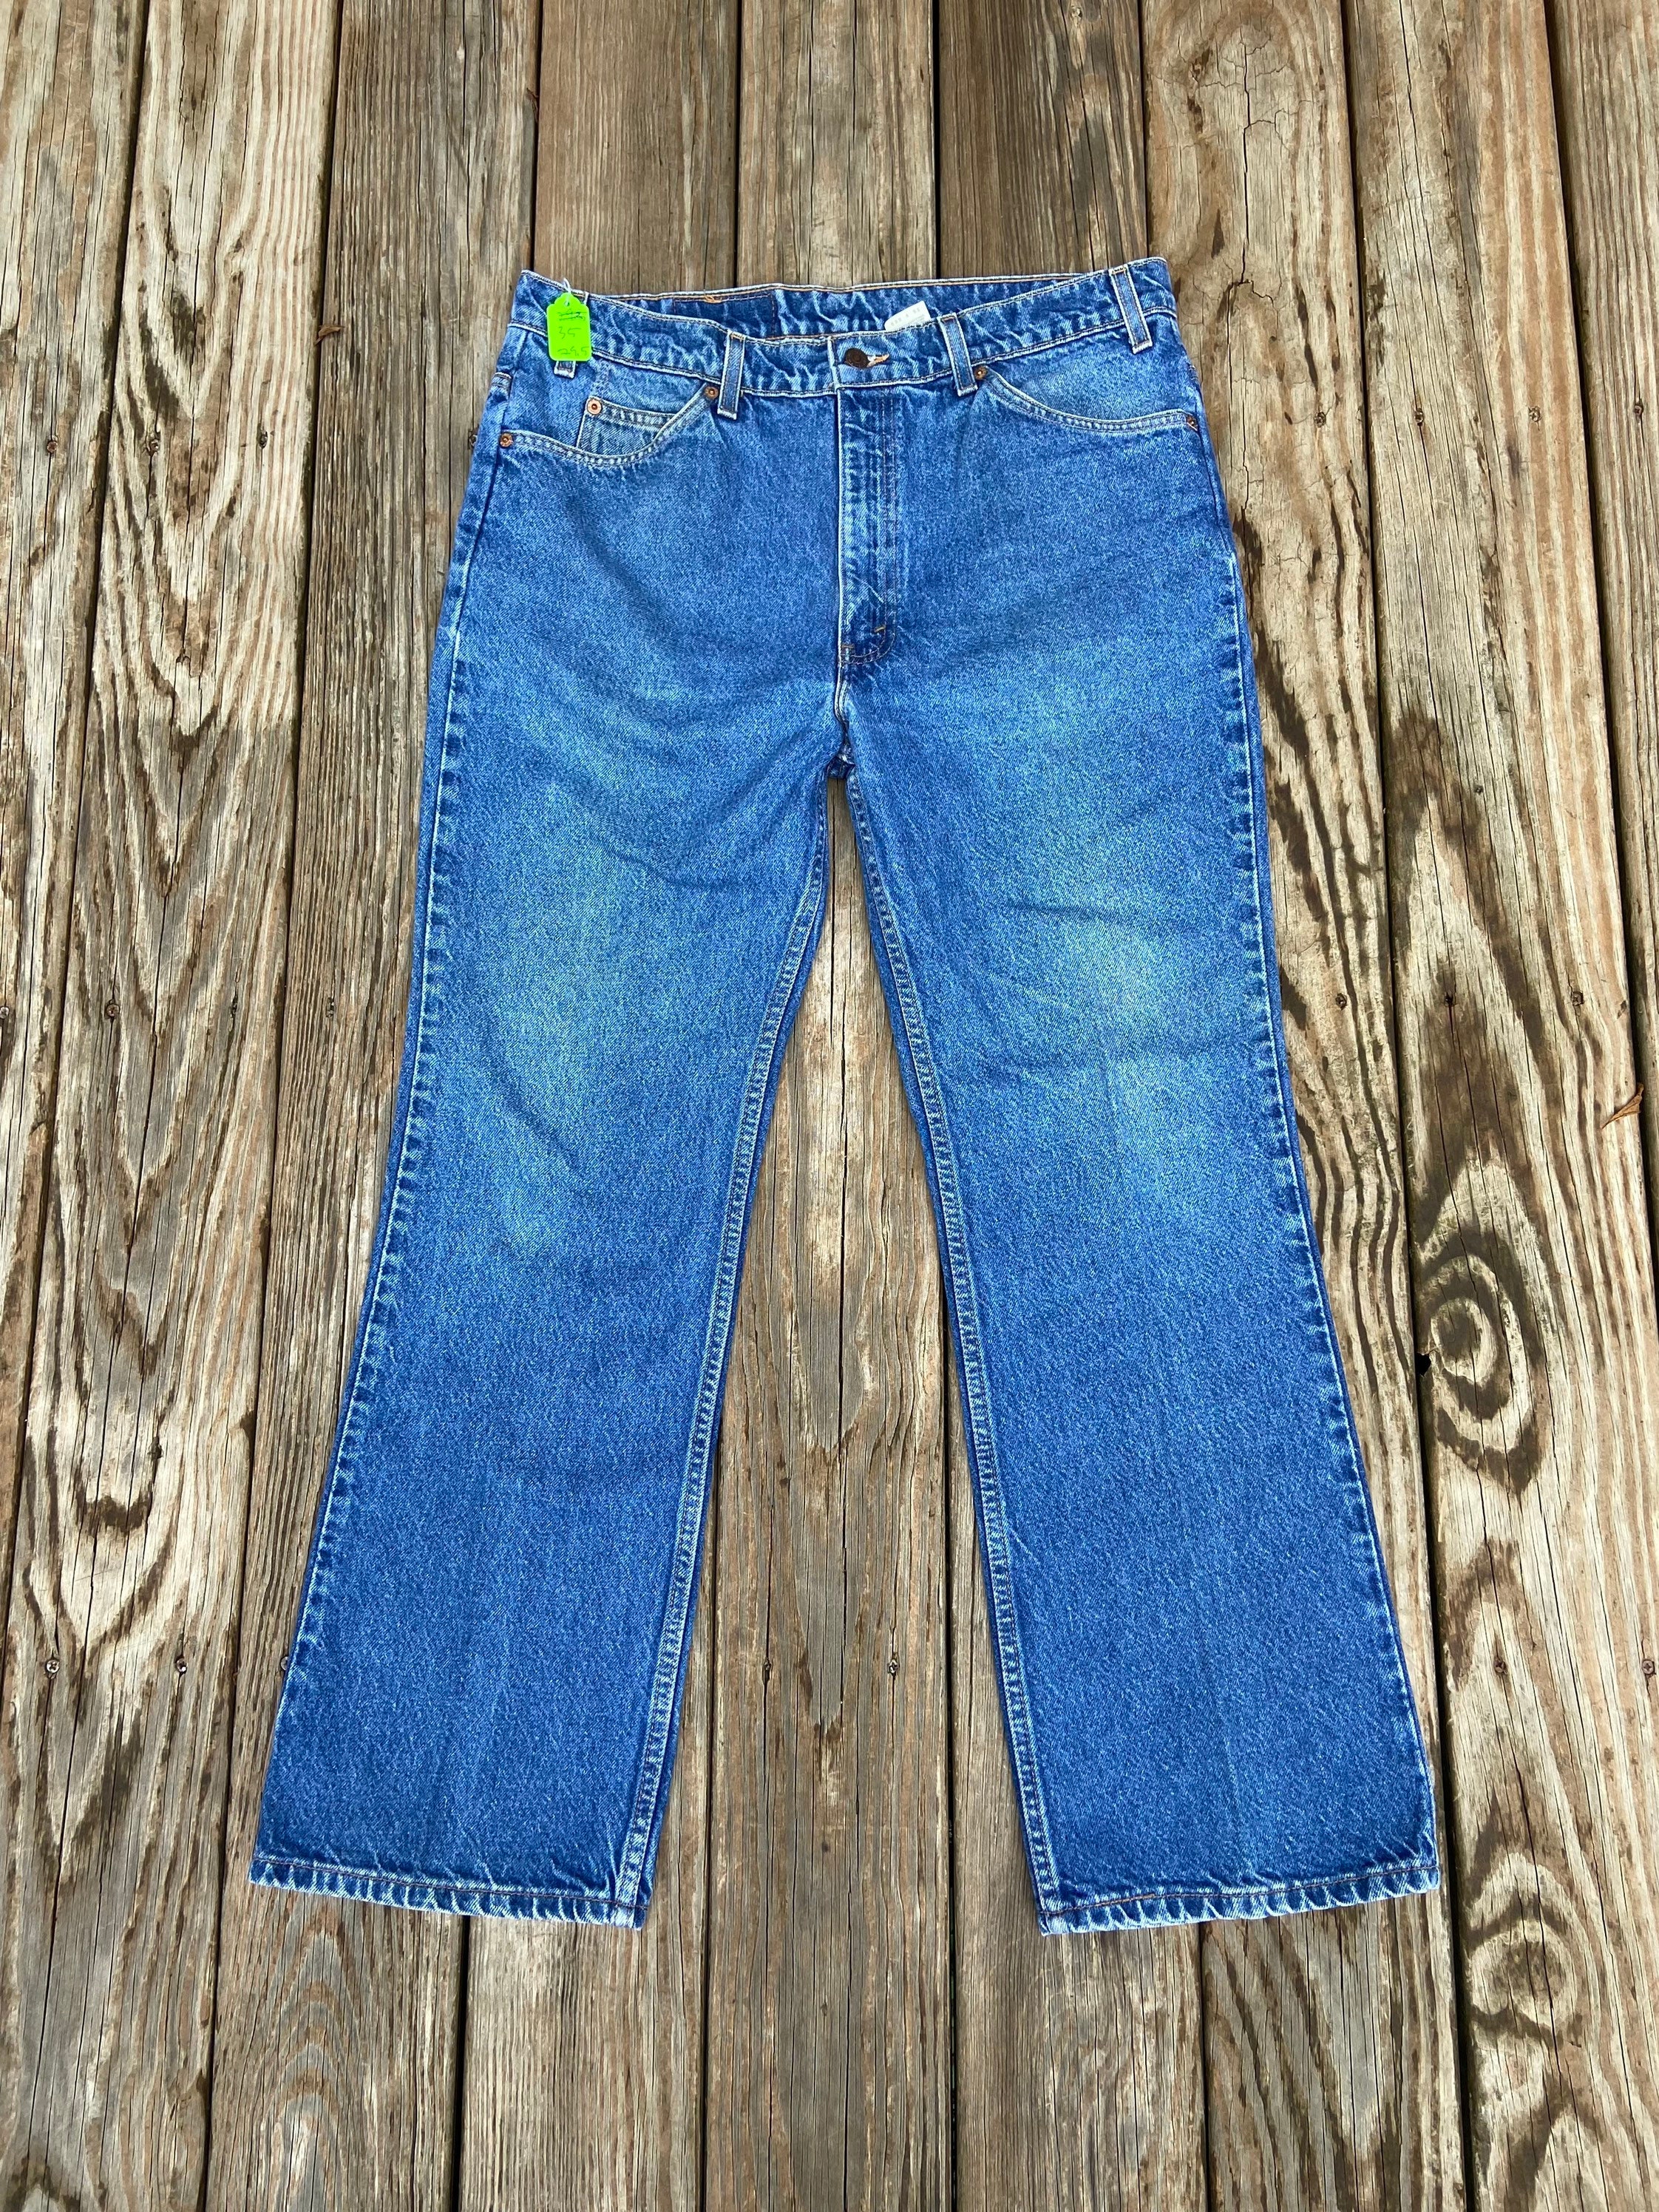 Vintage 517 Orange Tab  Levis Denim Jeans. Made in - Etsy Sweden